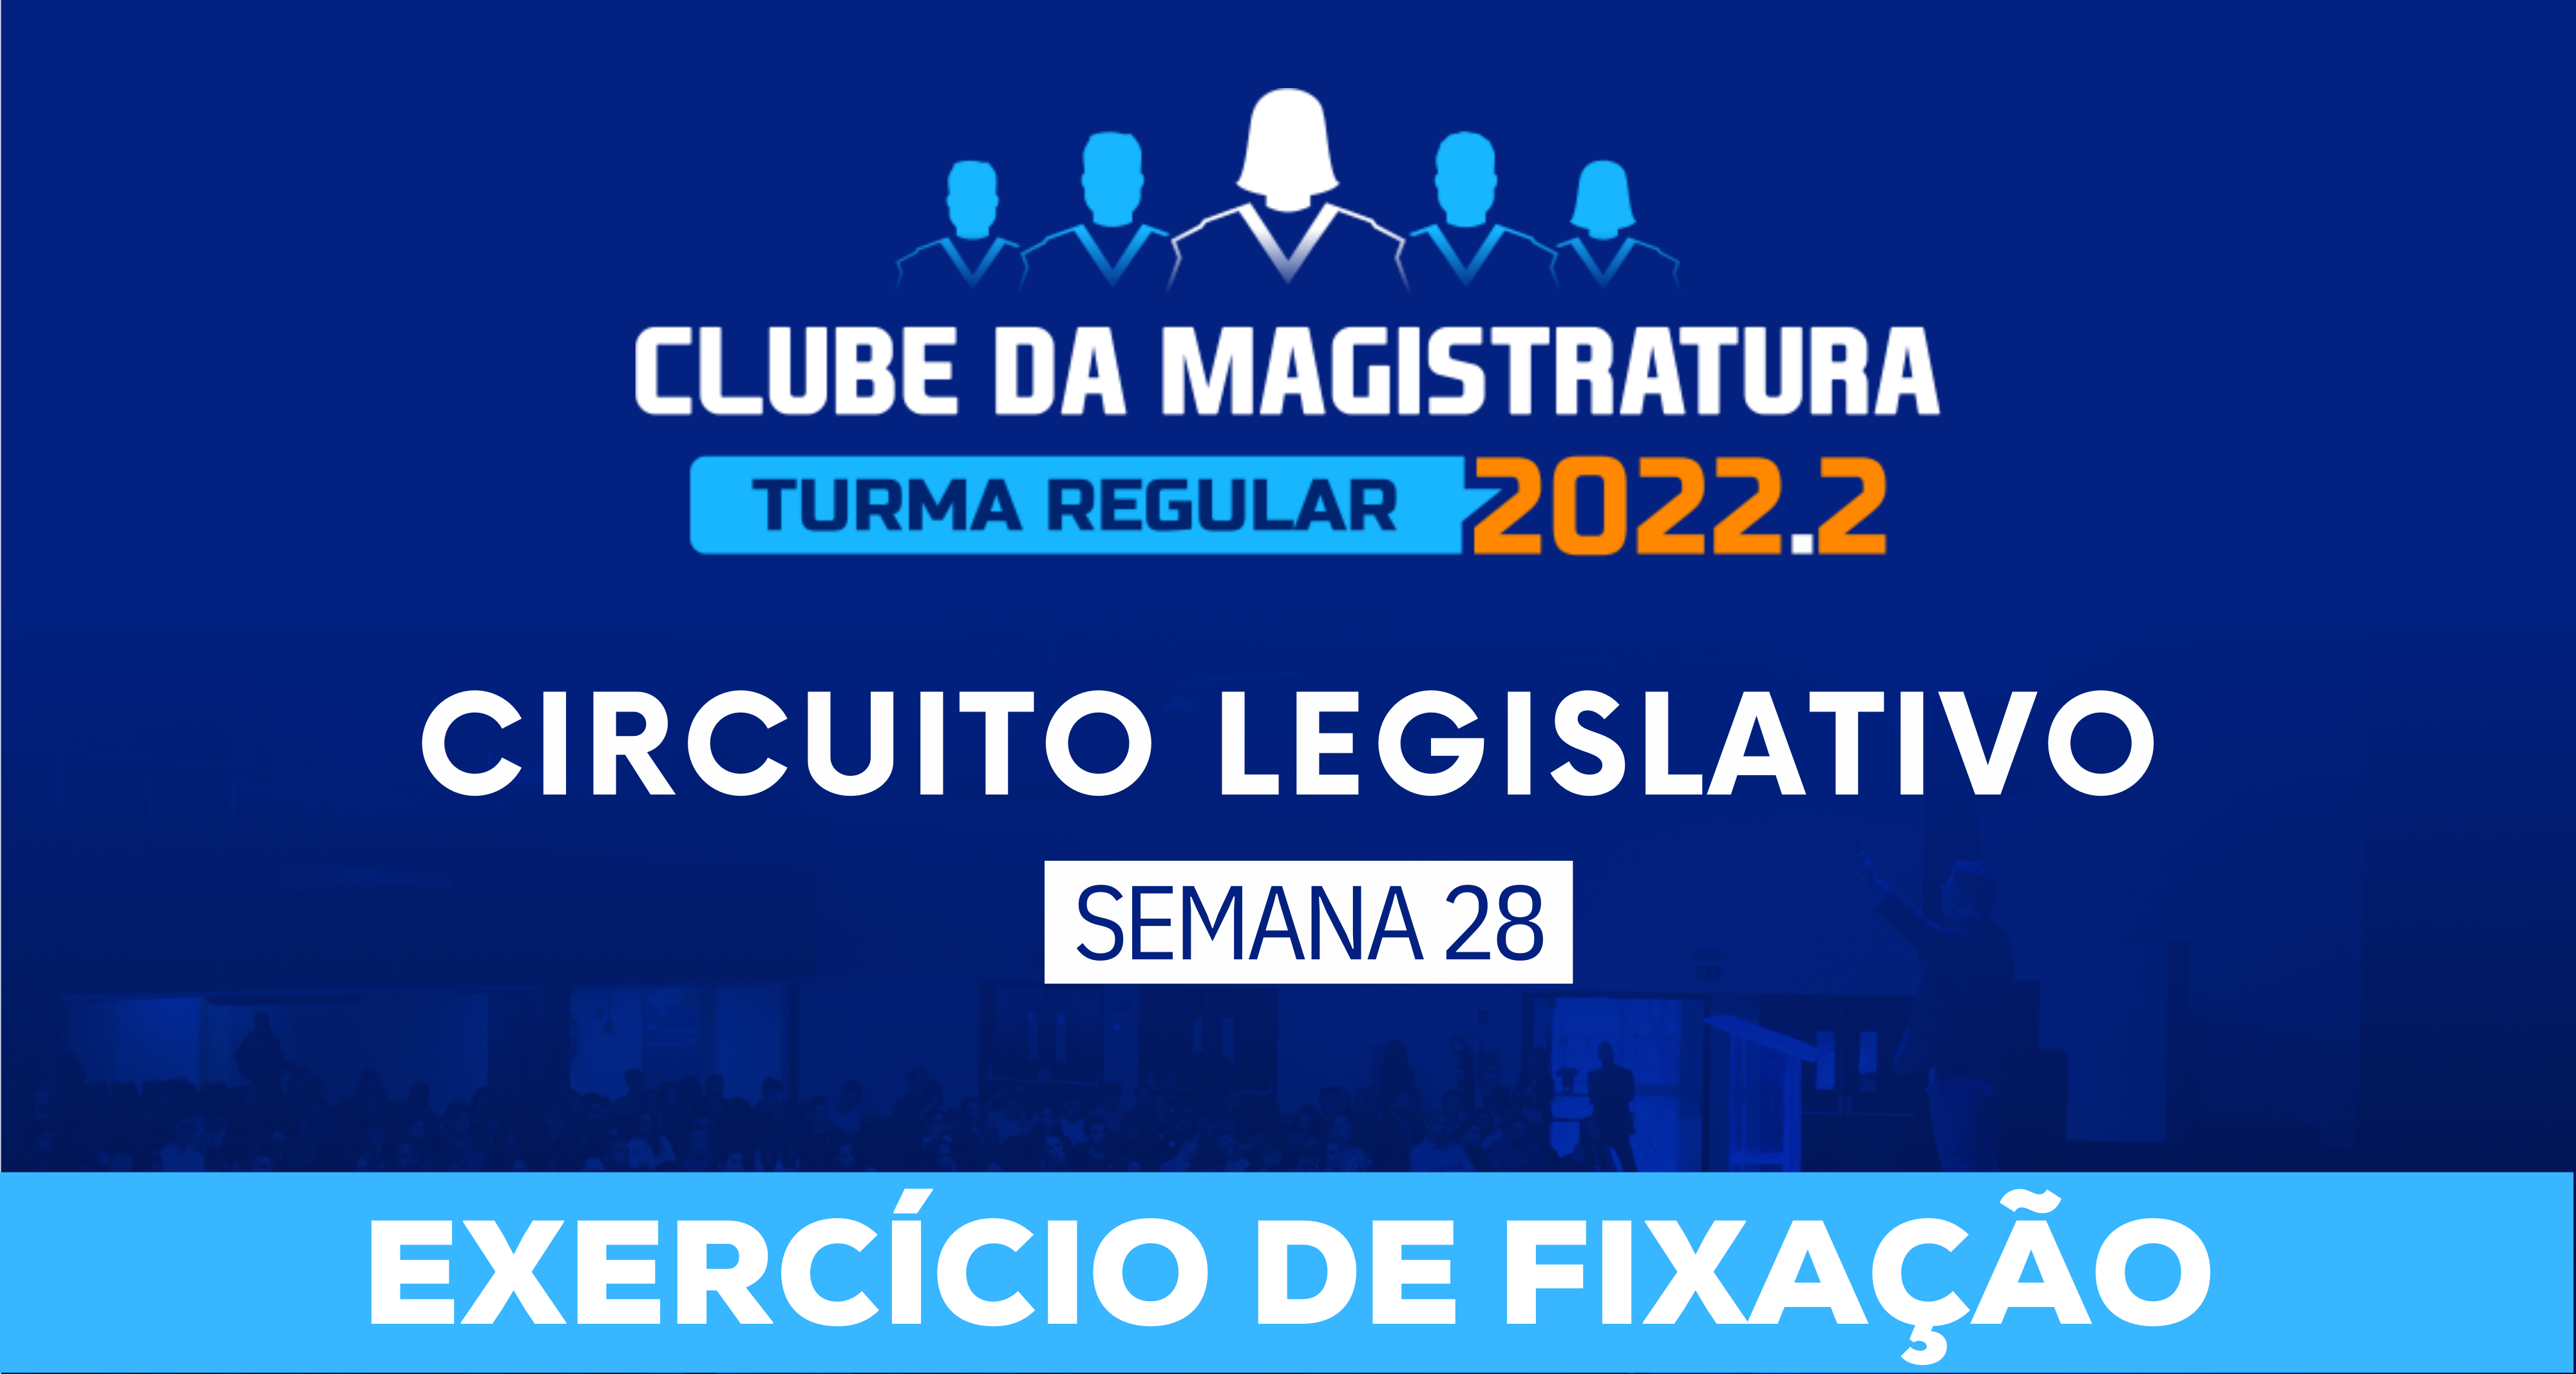 Circuito Legislativo 2022.2 (Clube da Magistratura - Semana 28)